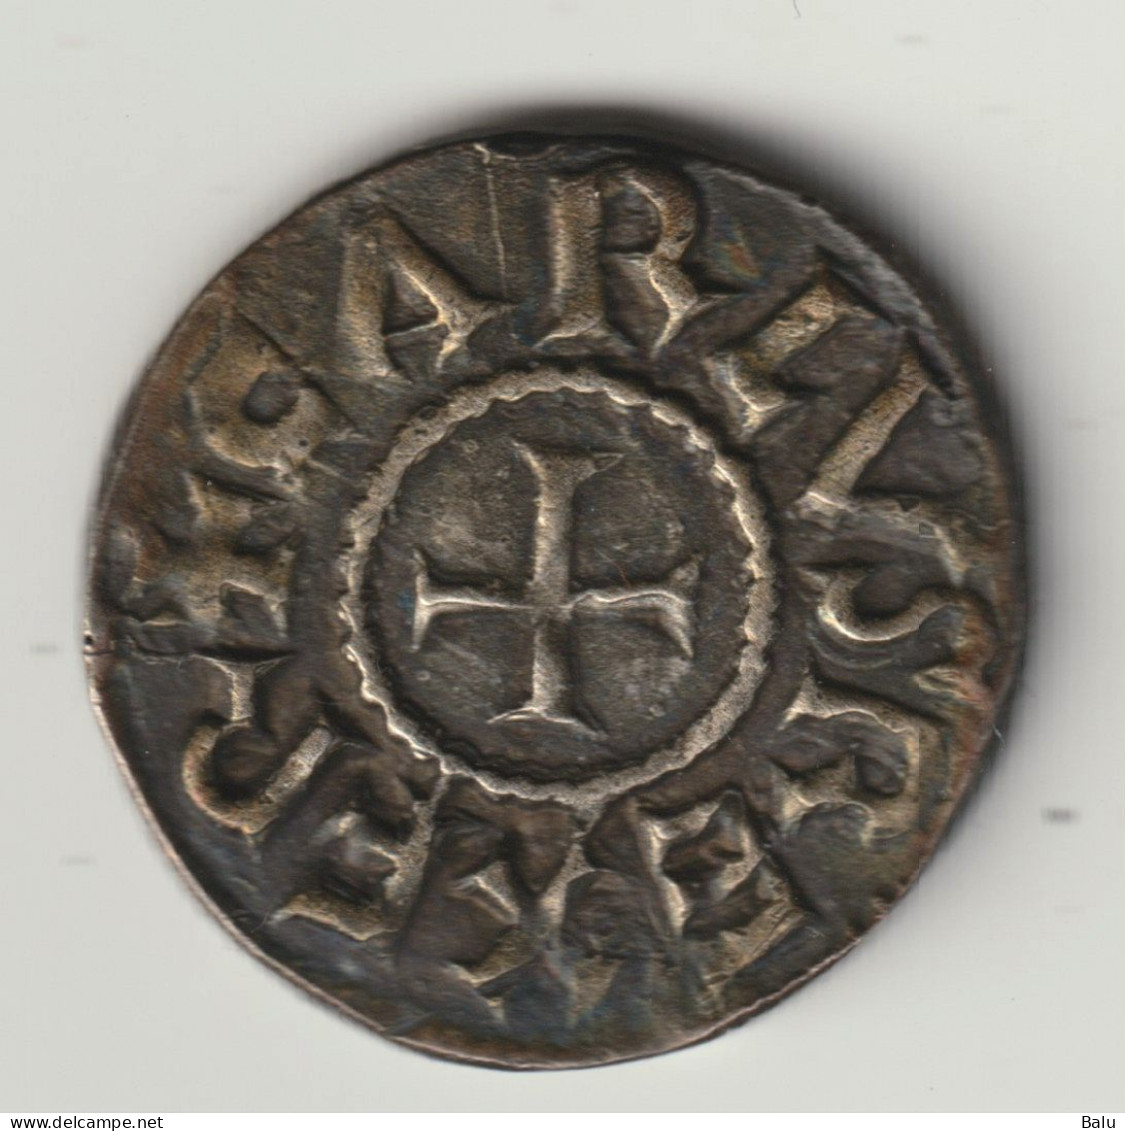 Ein Karolingischer Denar Karls Des Großen 793/94-814 Aus Dem Aachener Dom. Replik. 935er Sterlingsilber, 5 Scans - Counterfeits